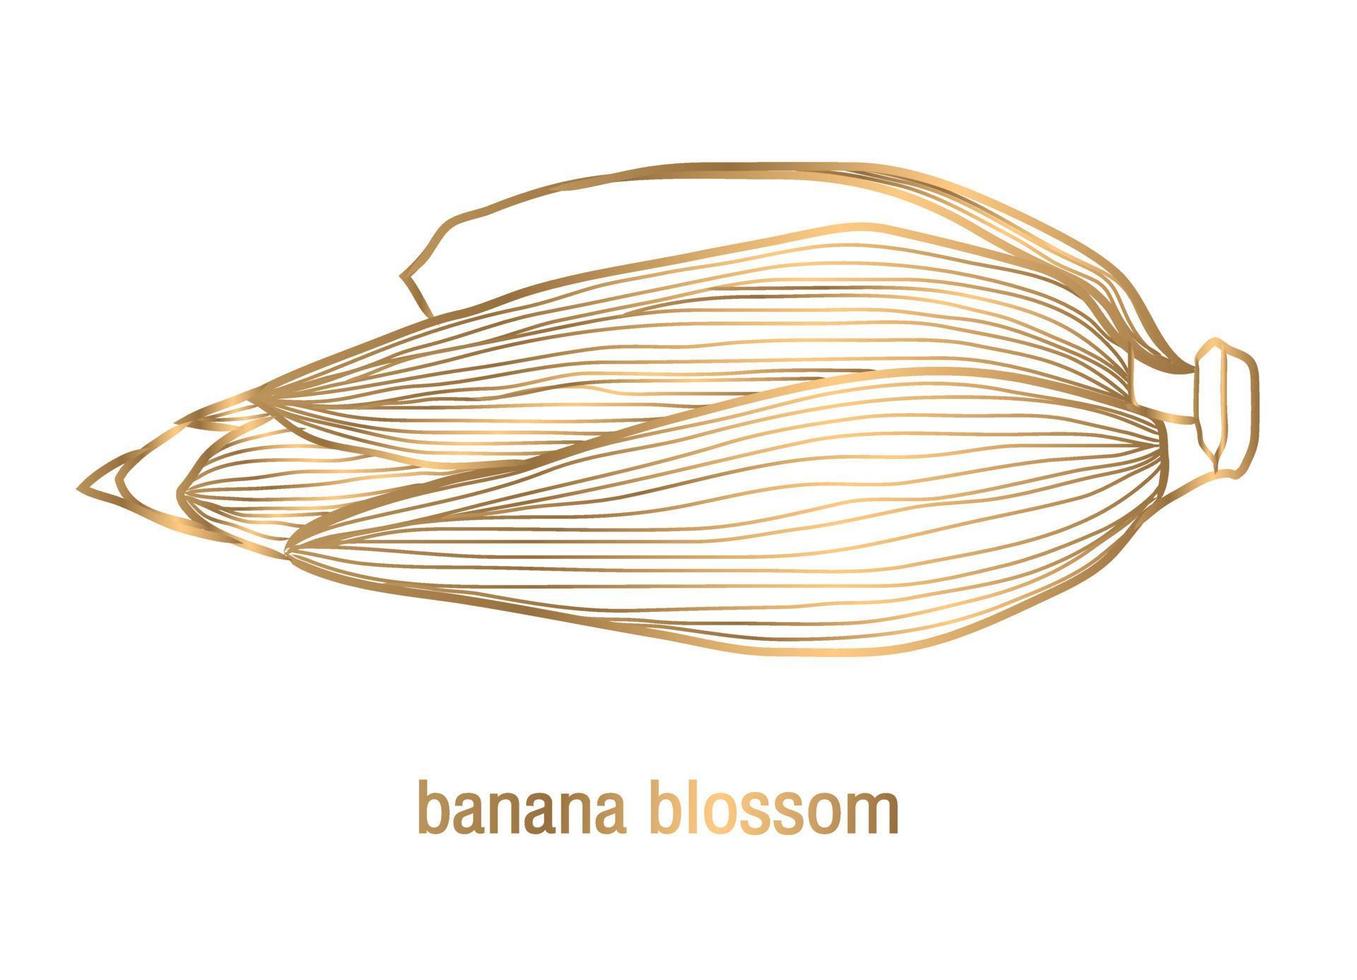 vector golden banana blossom on a white background